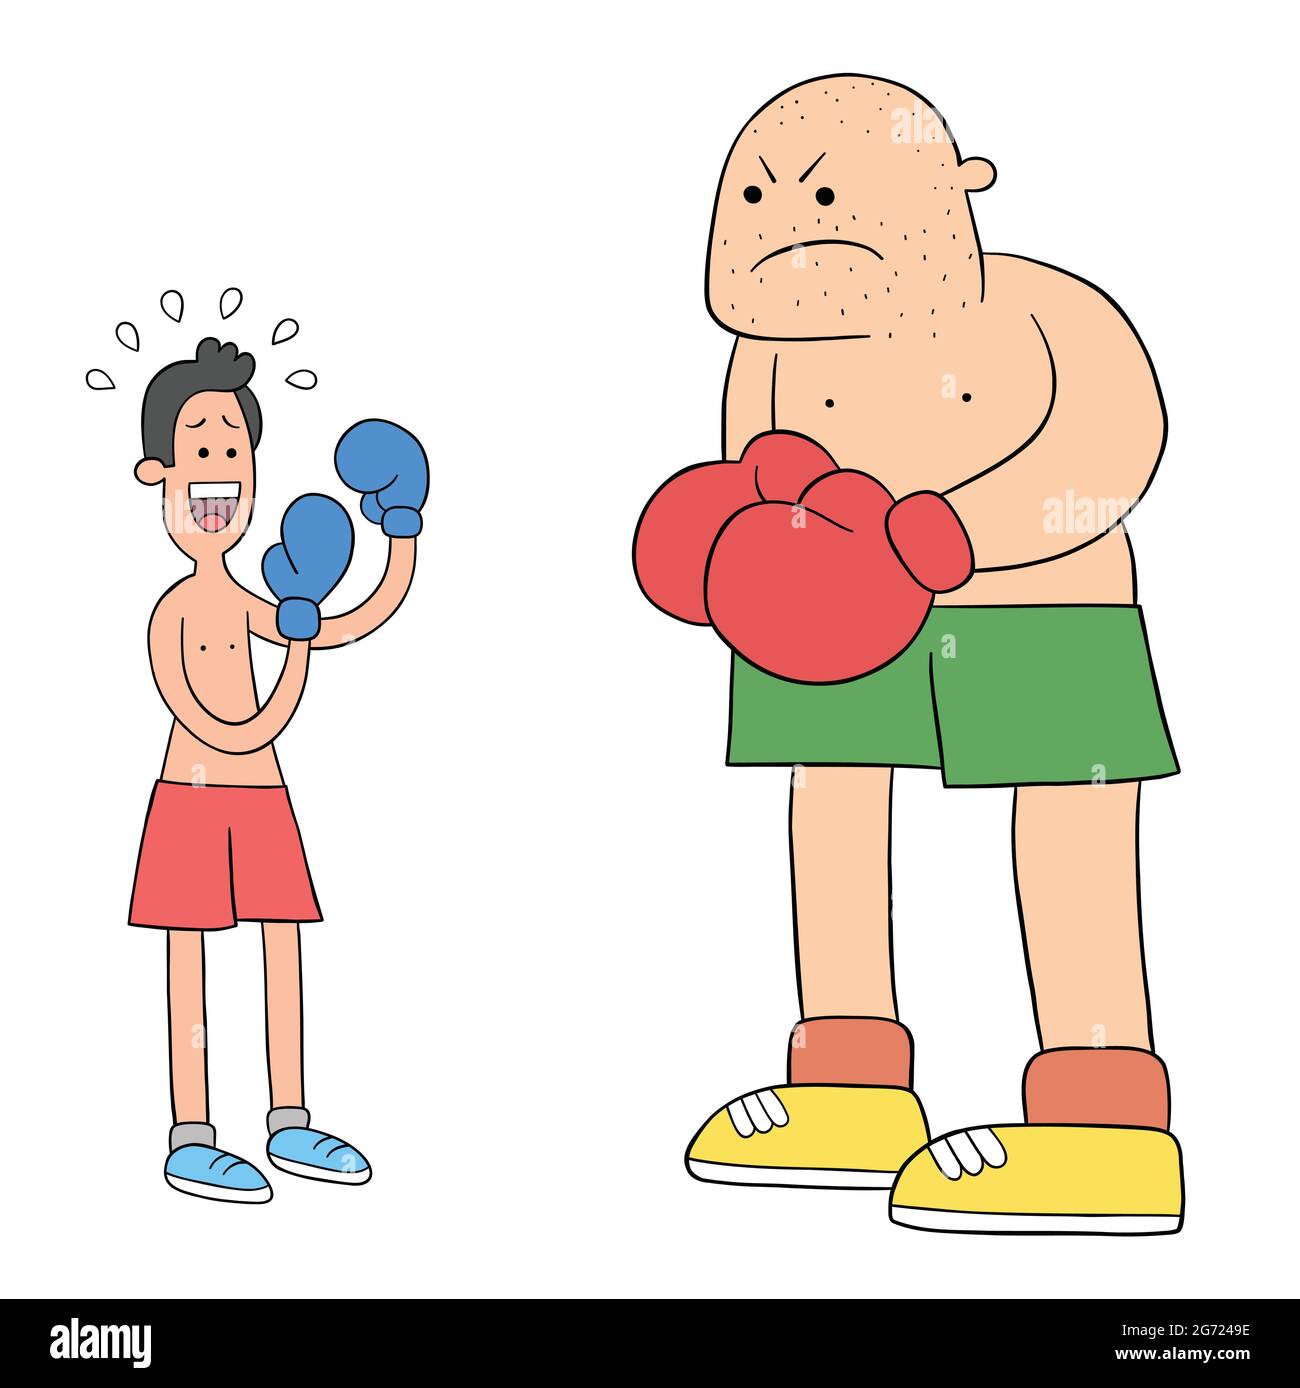 Cartoon zwei Boxer im Ring, eine schwach und ängstlich, die andere großmundig, Vektor-Illustration. Farbige und schwarze Umrisse. Stock Vektor